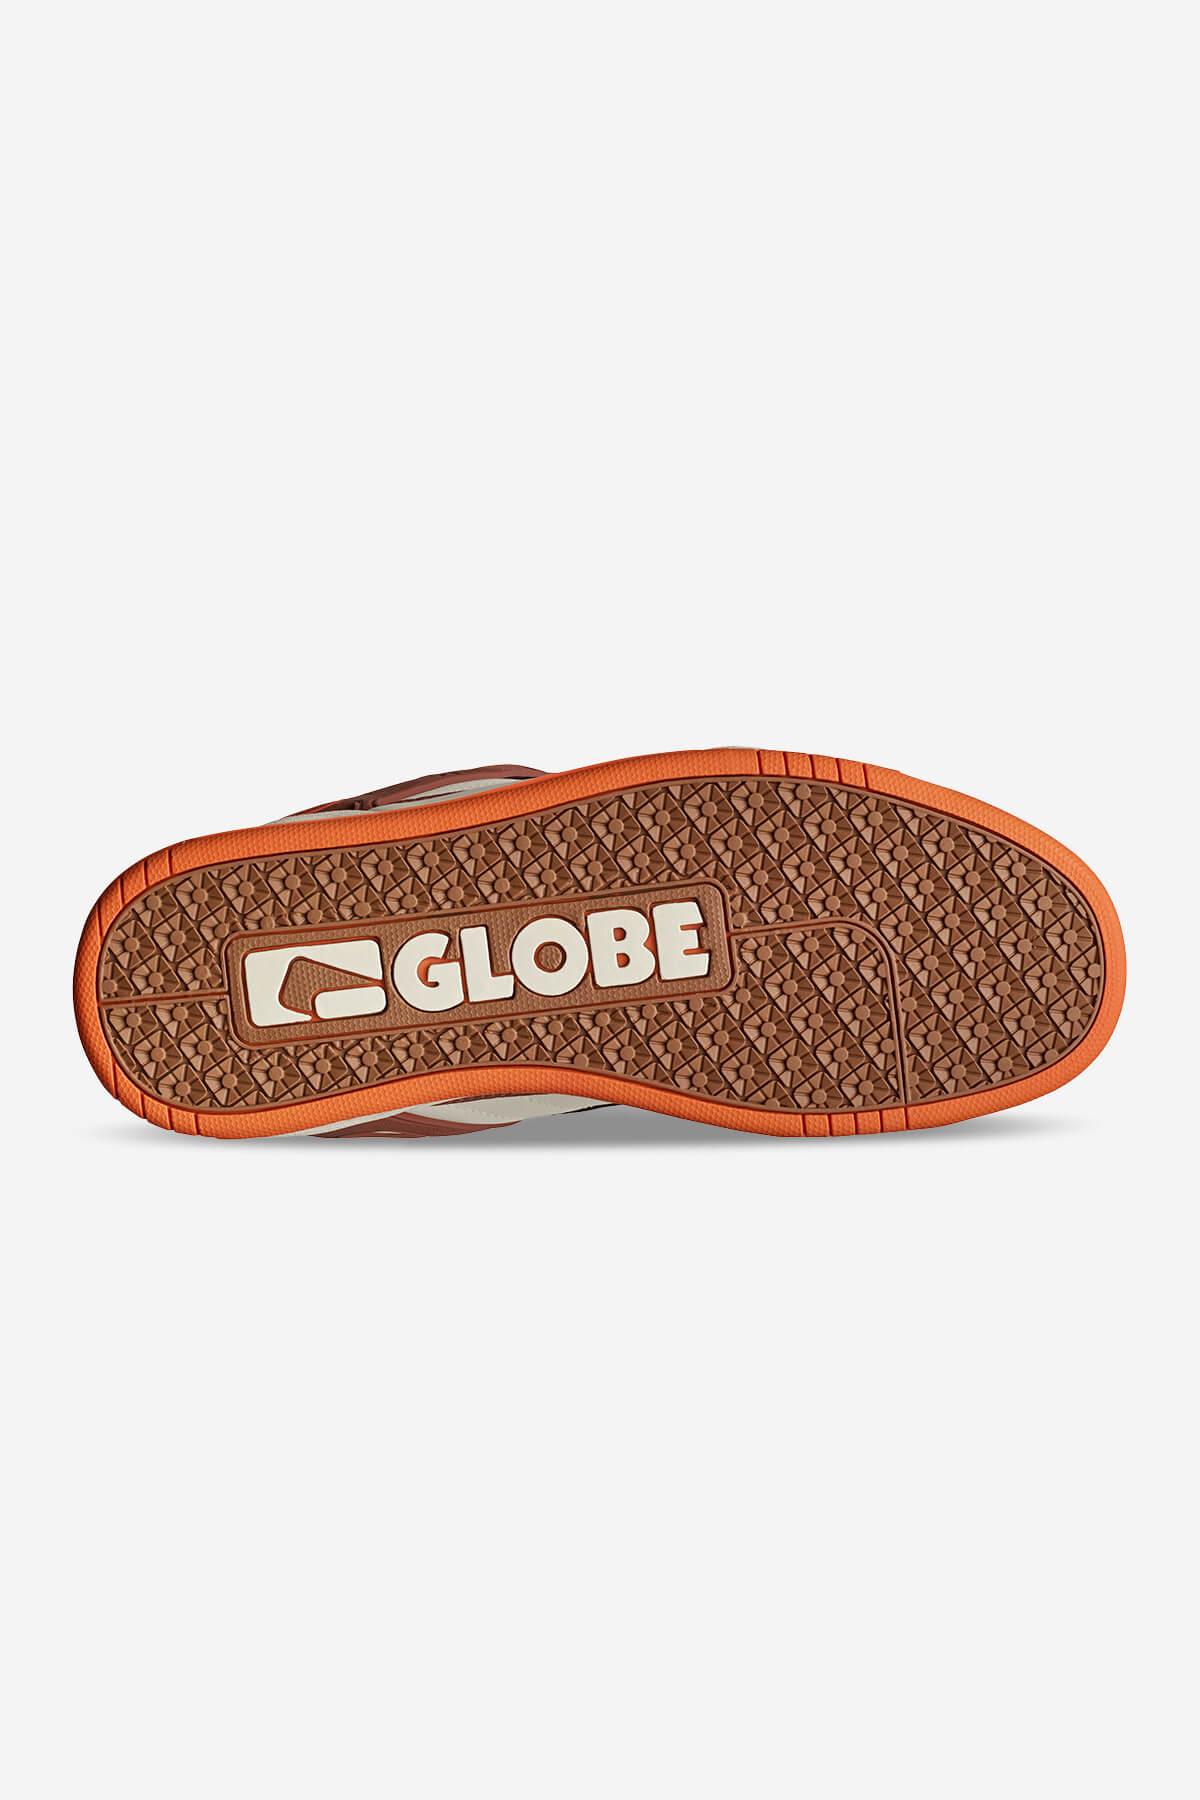 Globe - Tilt - Antike/Mokka - skateboard Schuhe